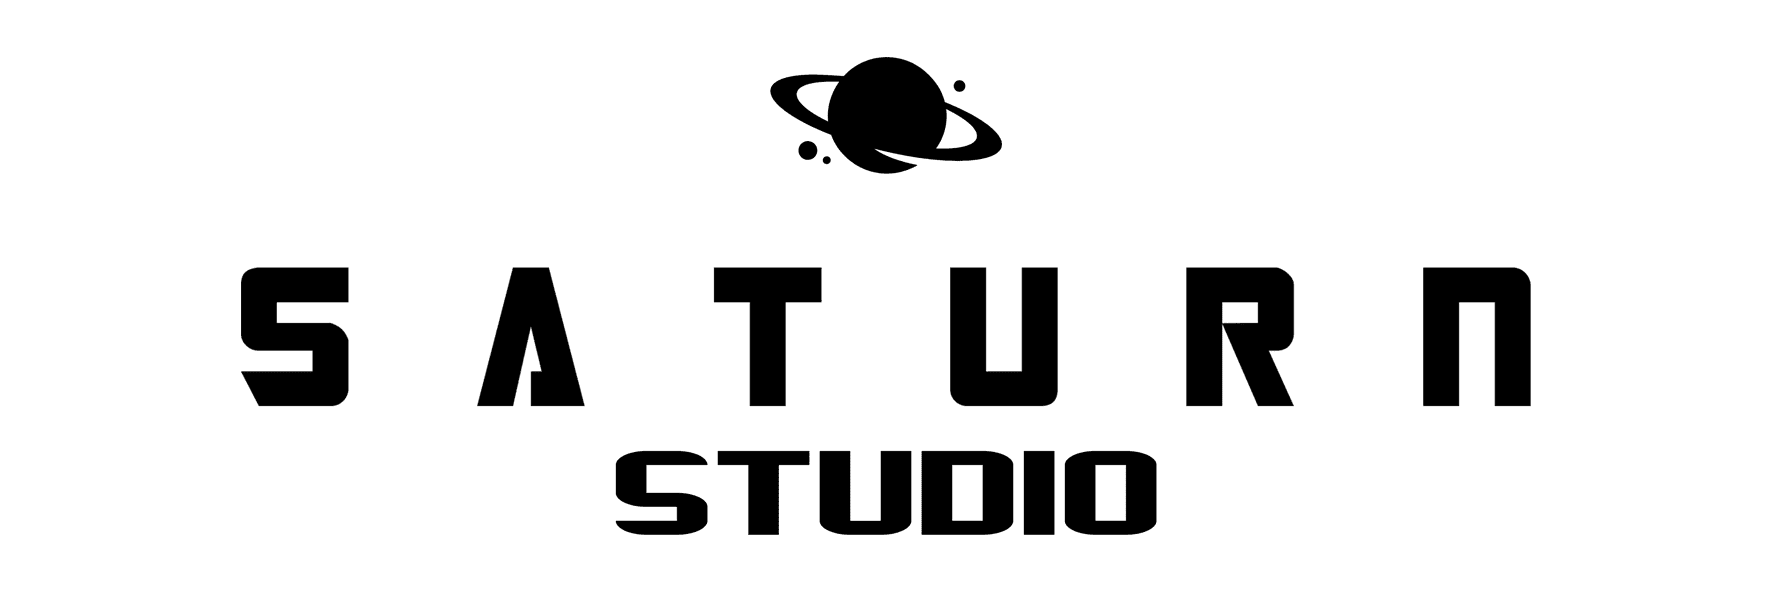 Saturn Studio